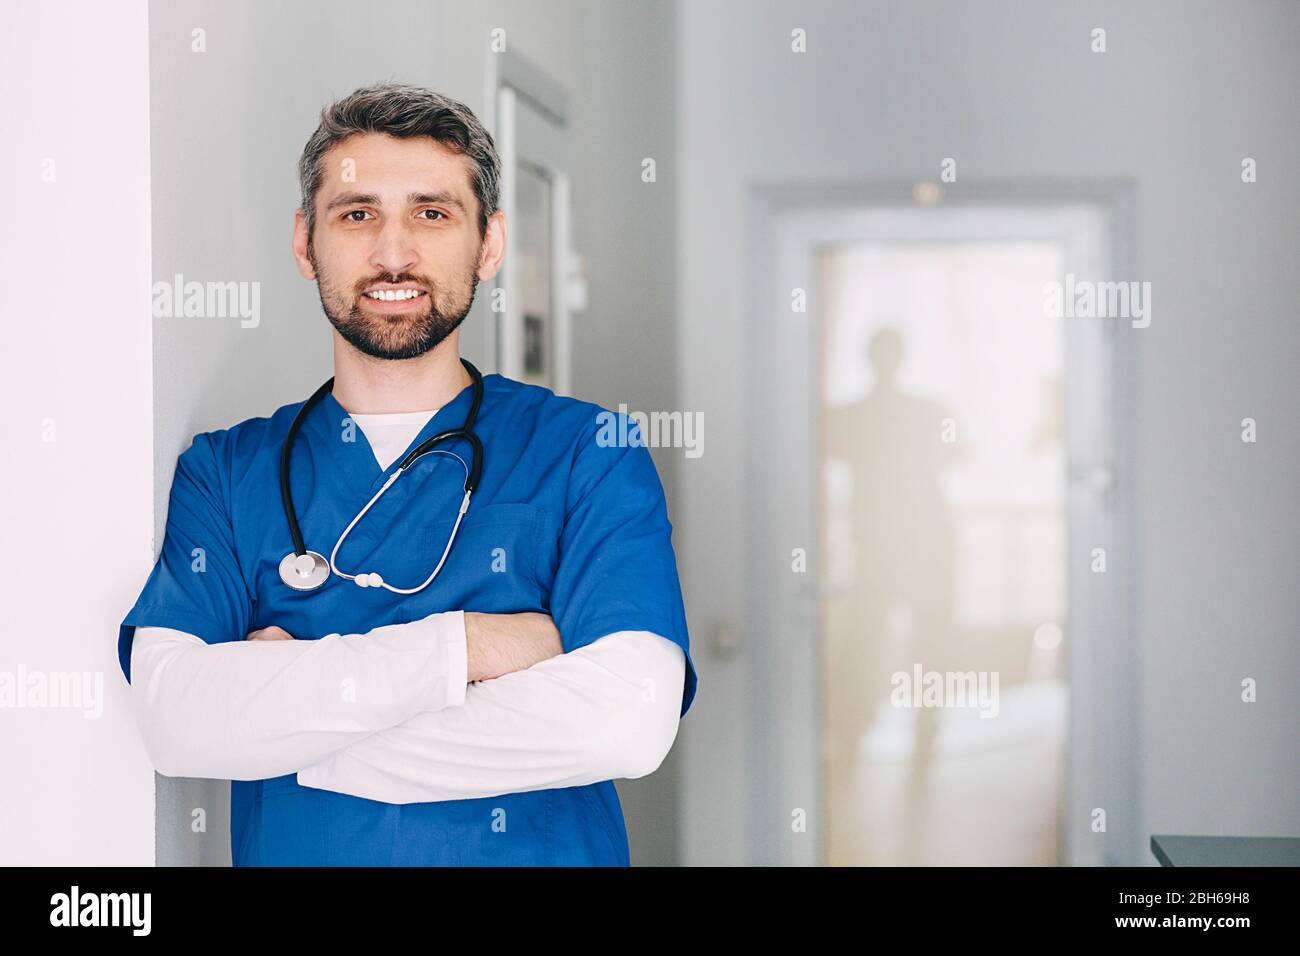 Männlicher Physiotherapeut mit Stethoskop in der Klinik. Er lächelt und schaut auf die Kamera. Stockfoto